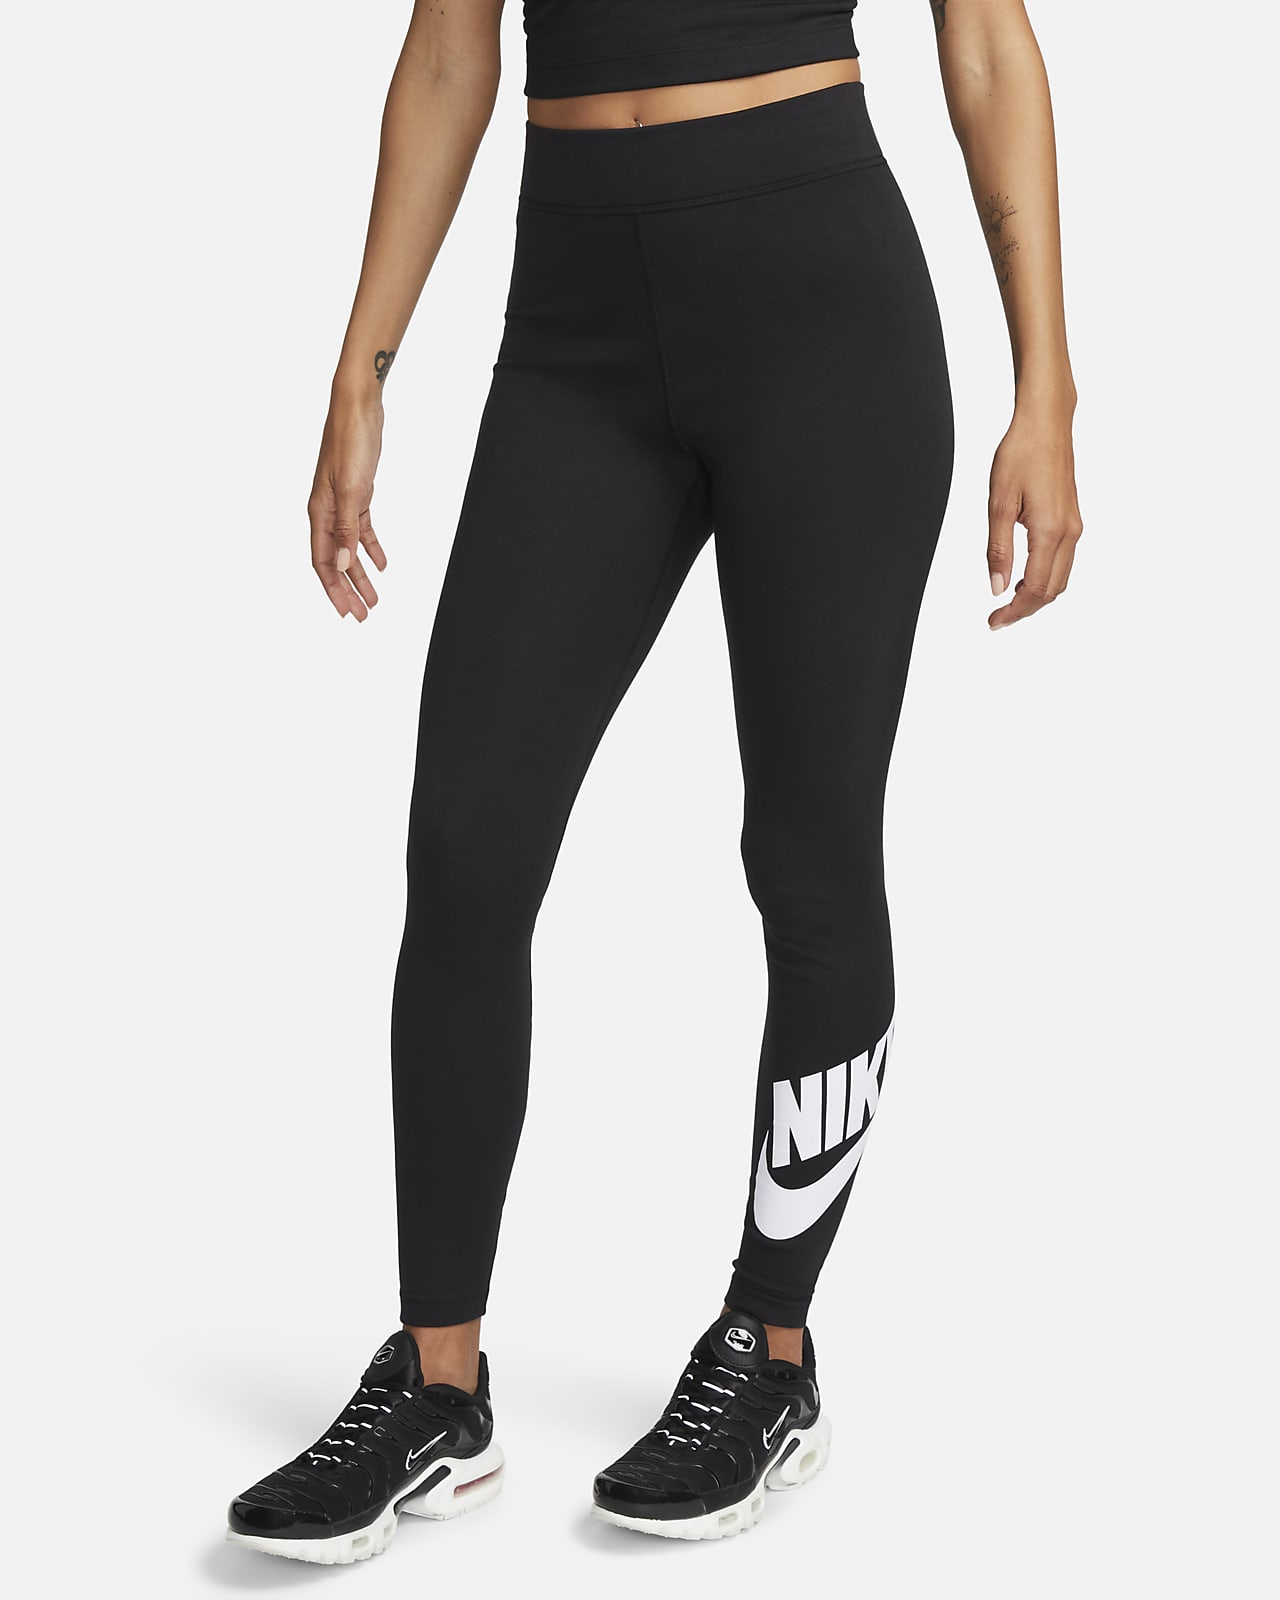 Women's High-Waisted Leggings. Nike CA